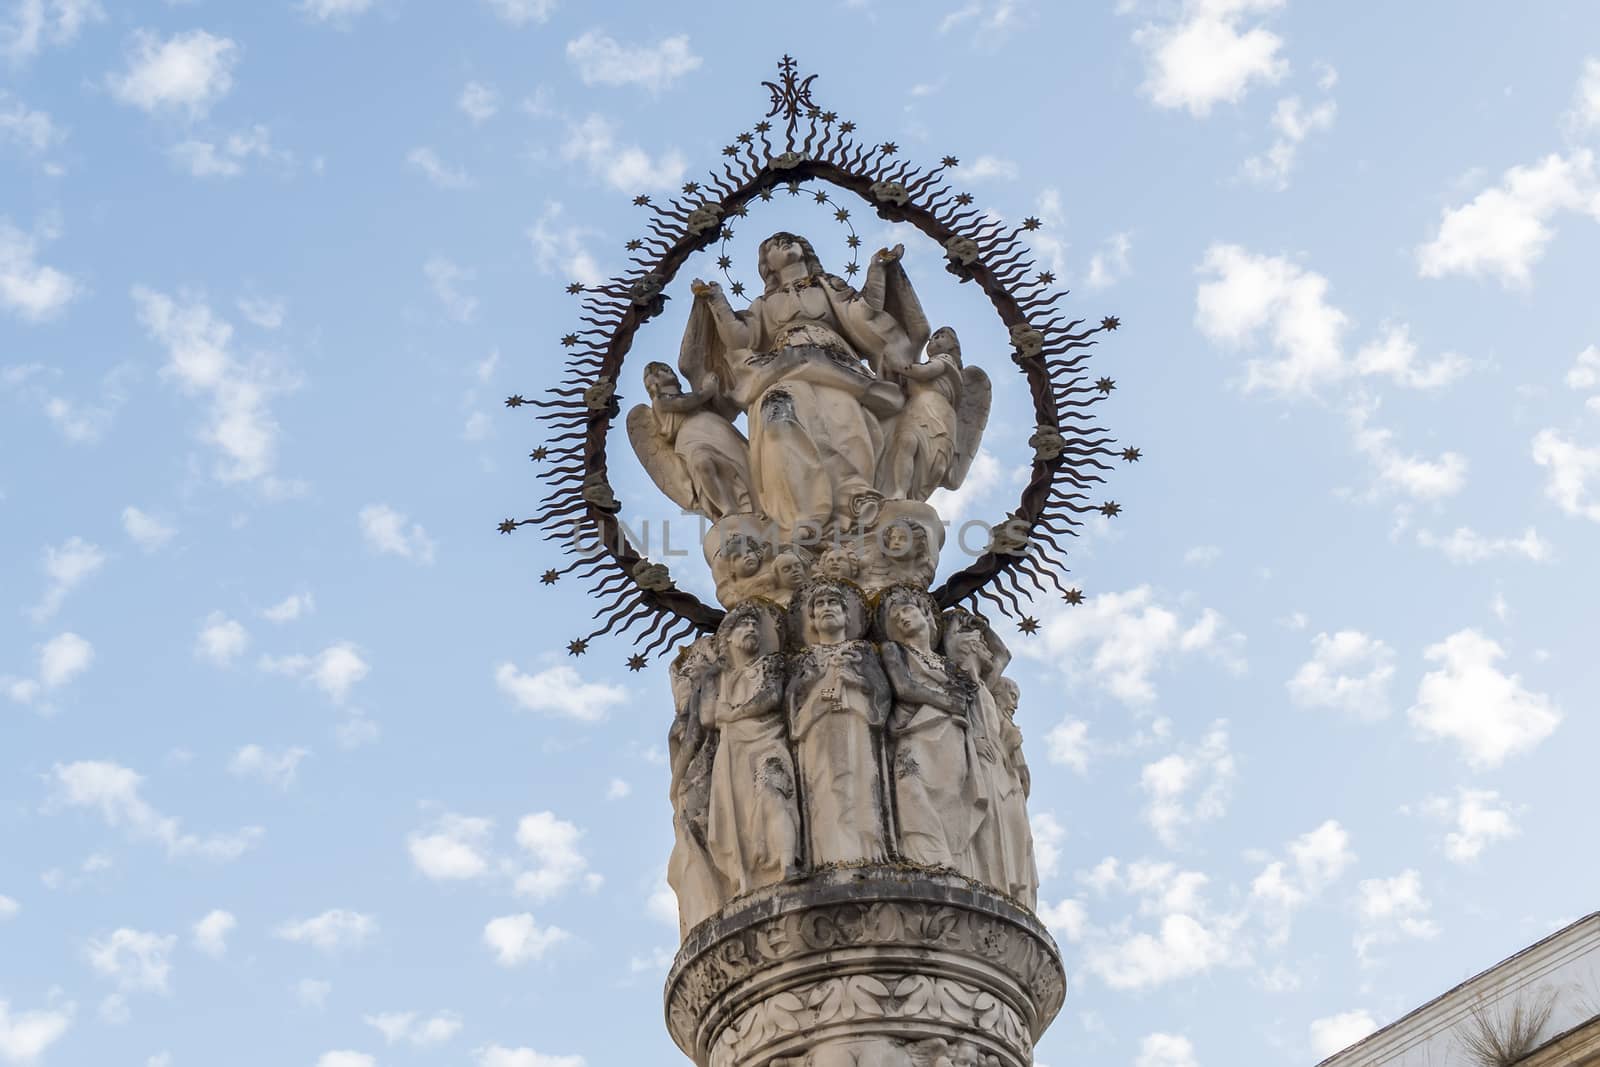 Assumption monument, Jerez de la Frontera, Spain by max8xam